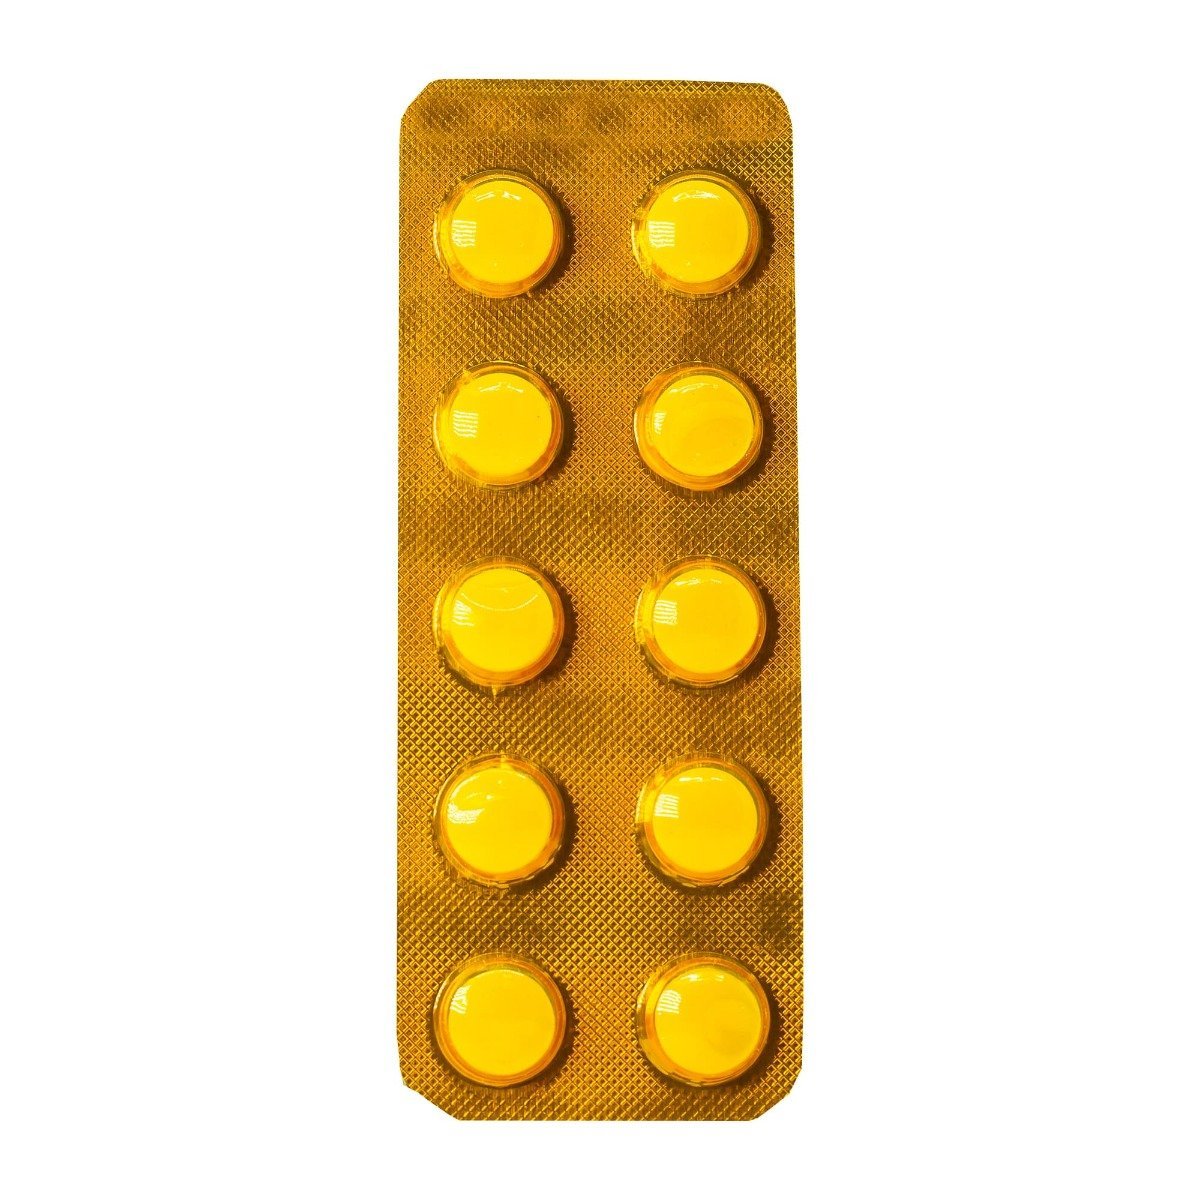 Aldomet 250 mg - 30 Tablets - Bloom Pharmacy